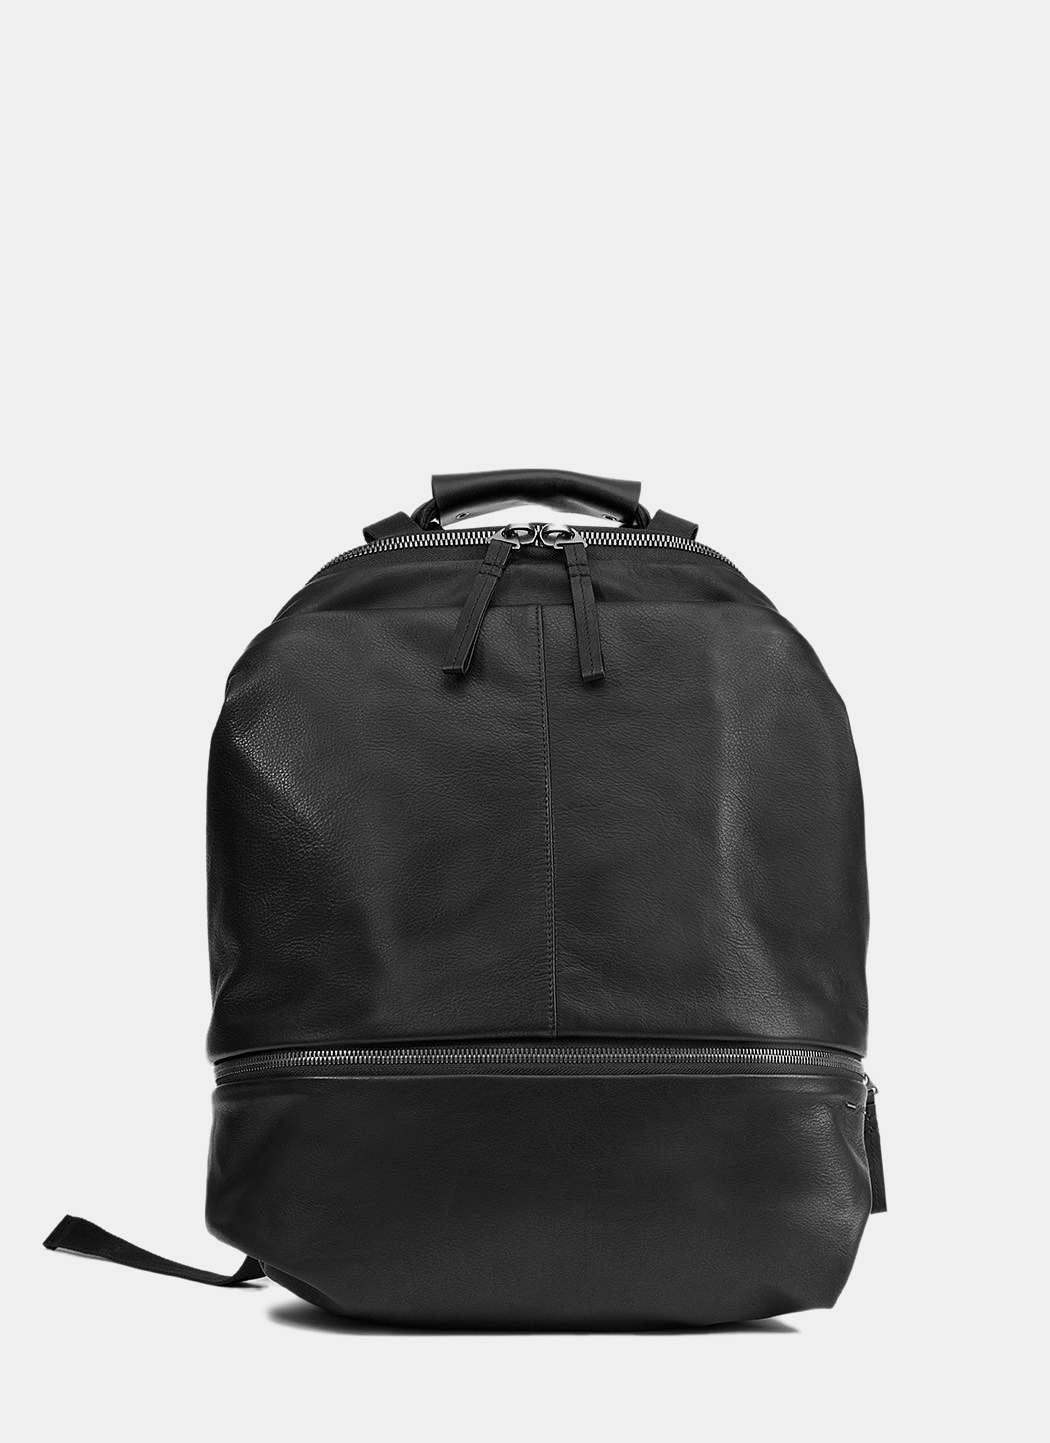 Cote et Ciel Meuse Alias Leather Backpack | LN-CC